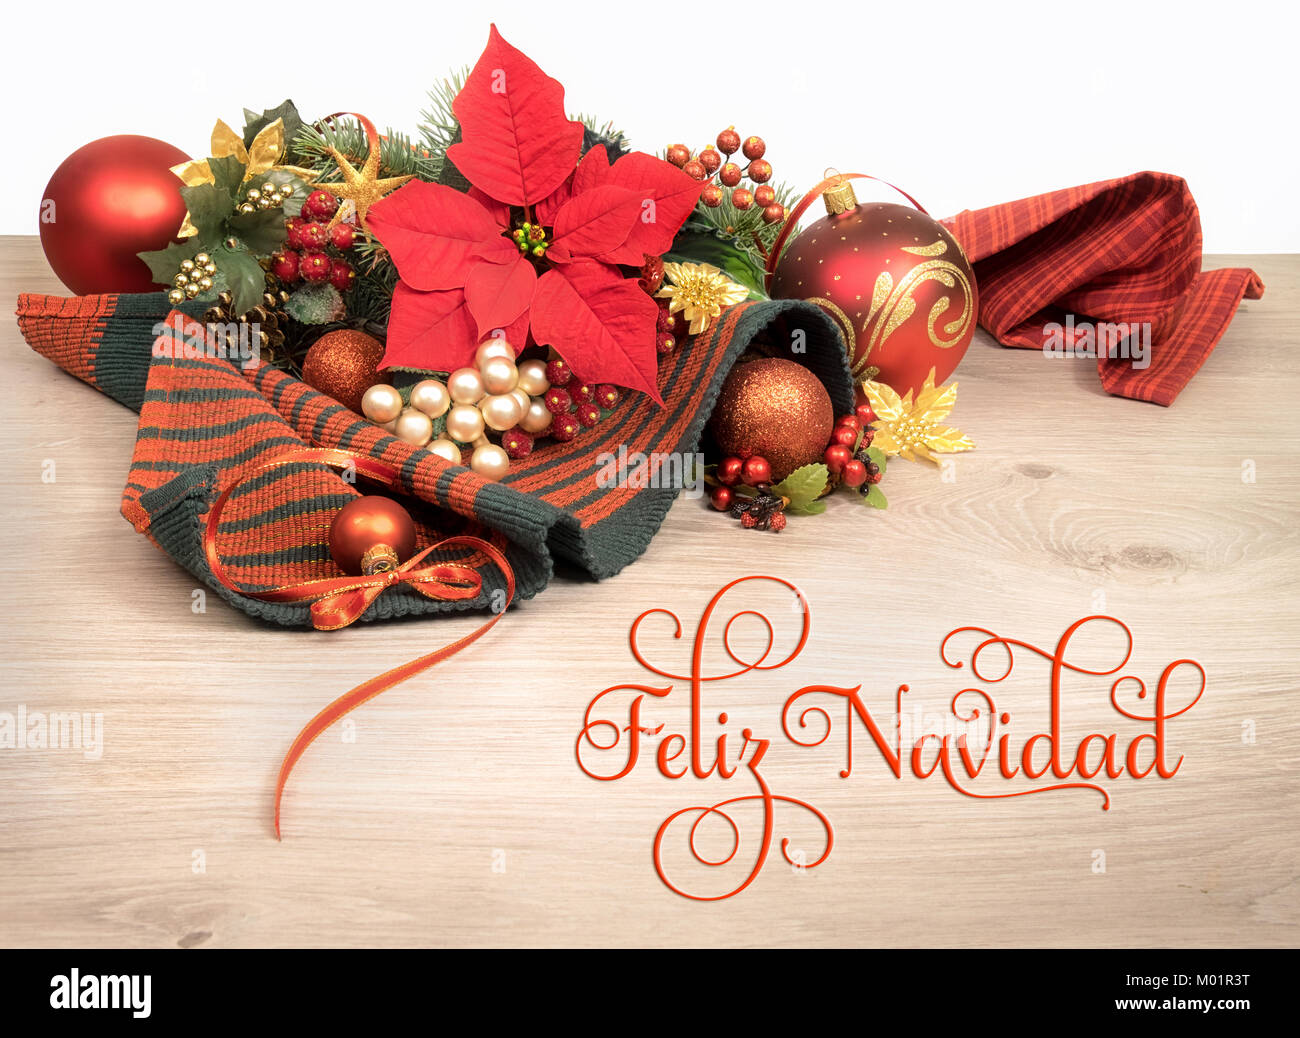 Fond de bois avec poinsettia et arbre de Noël décoré de brindilles, de texte sur l'image signifie 'Merry Christmas' en espagnol Banque D'Images